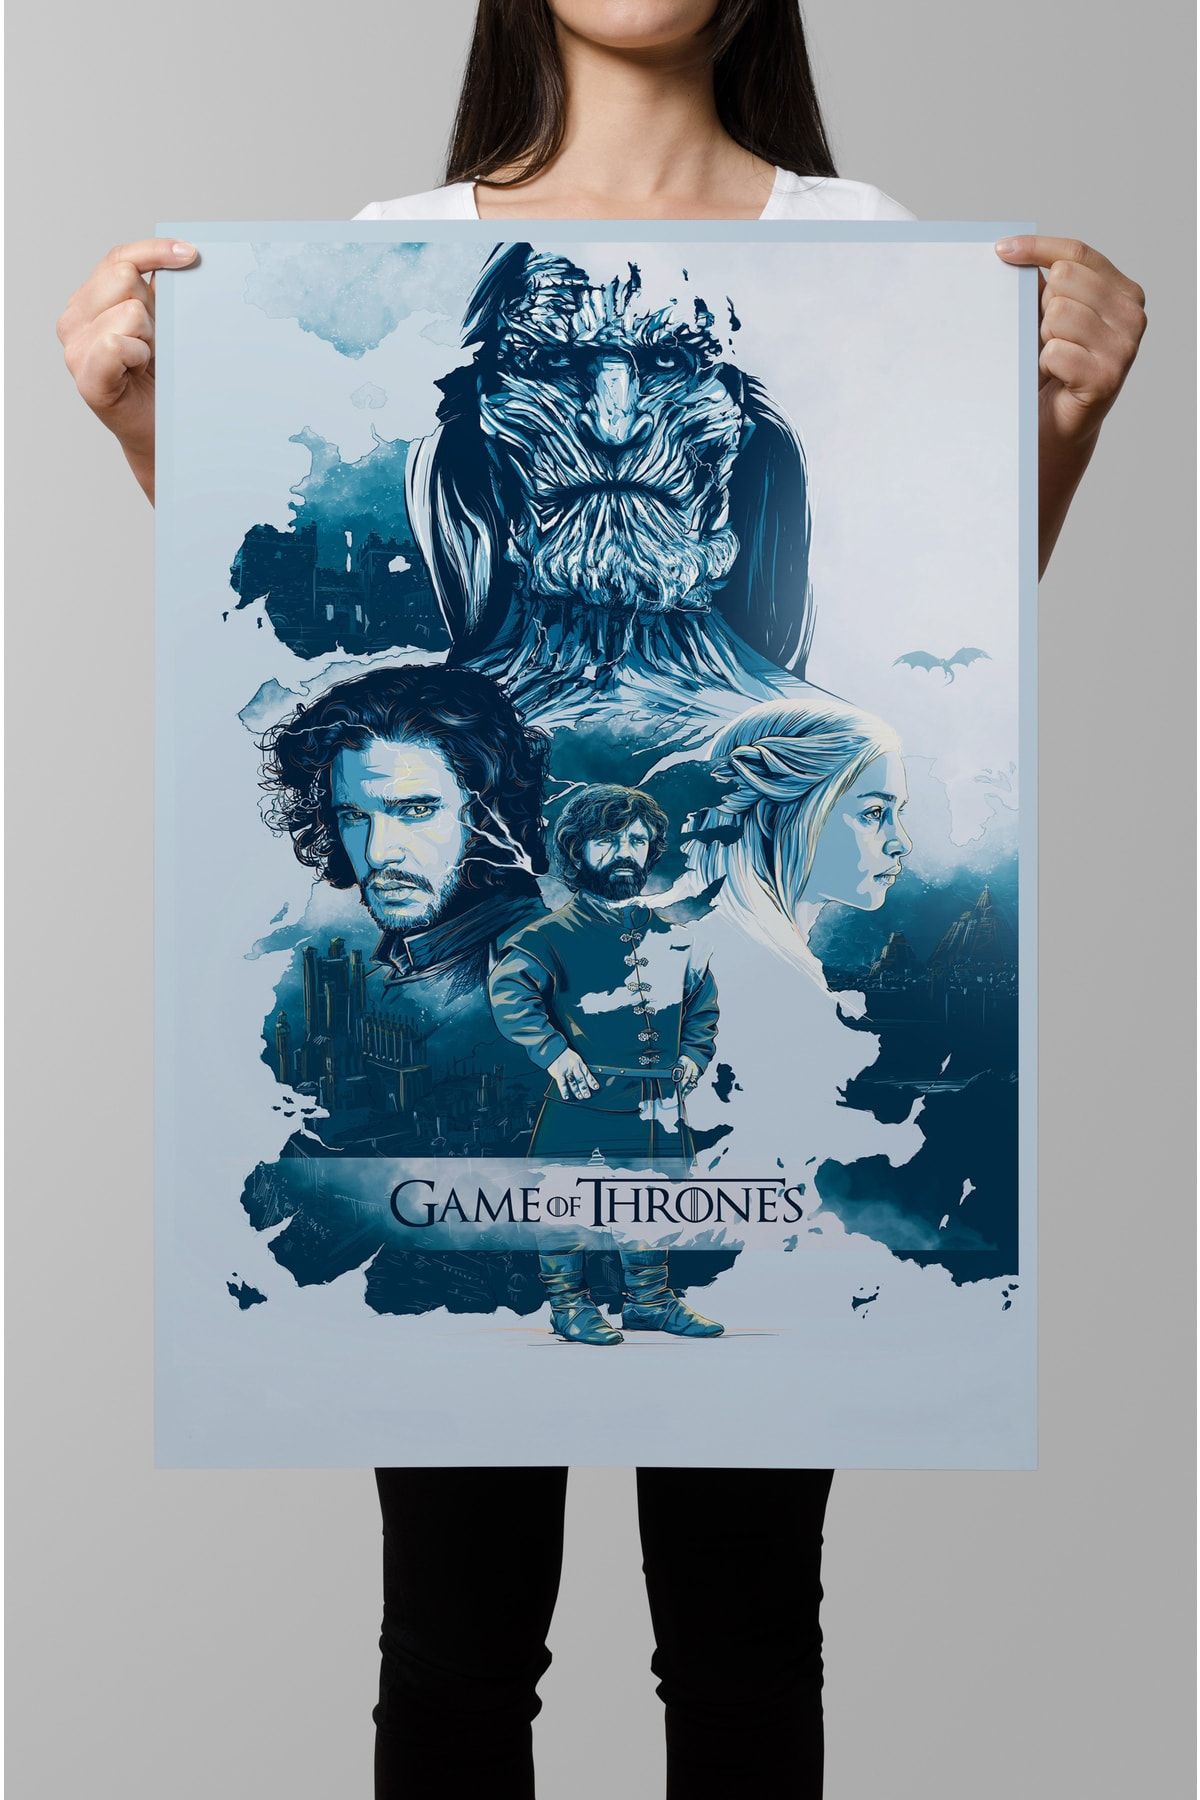 Denizposter Game Of Thrones, Yabancı Dizi Film Afiş, Posterleri 50x70